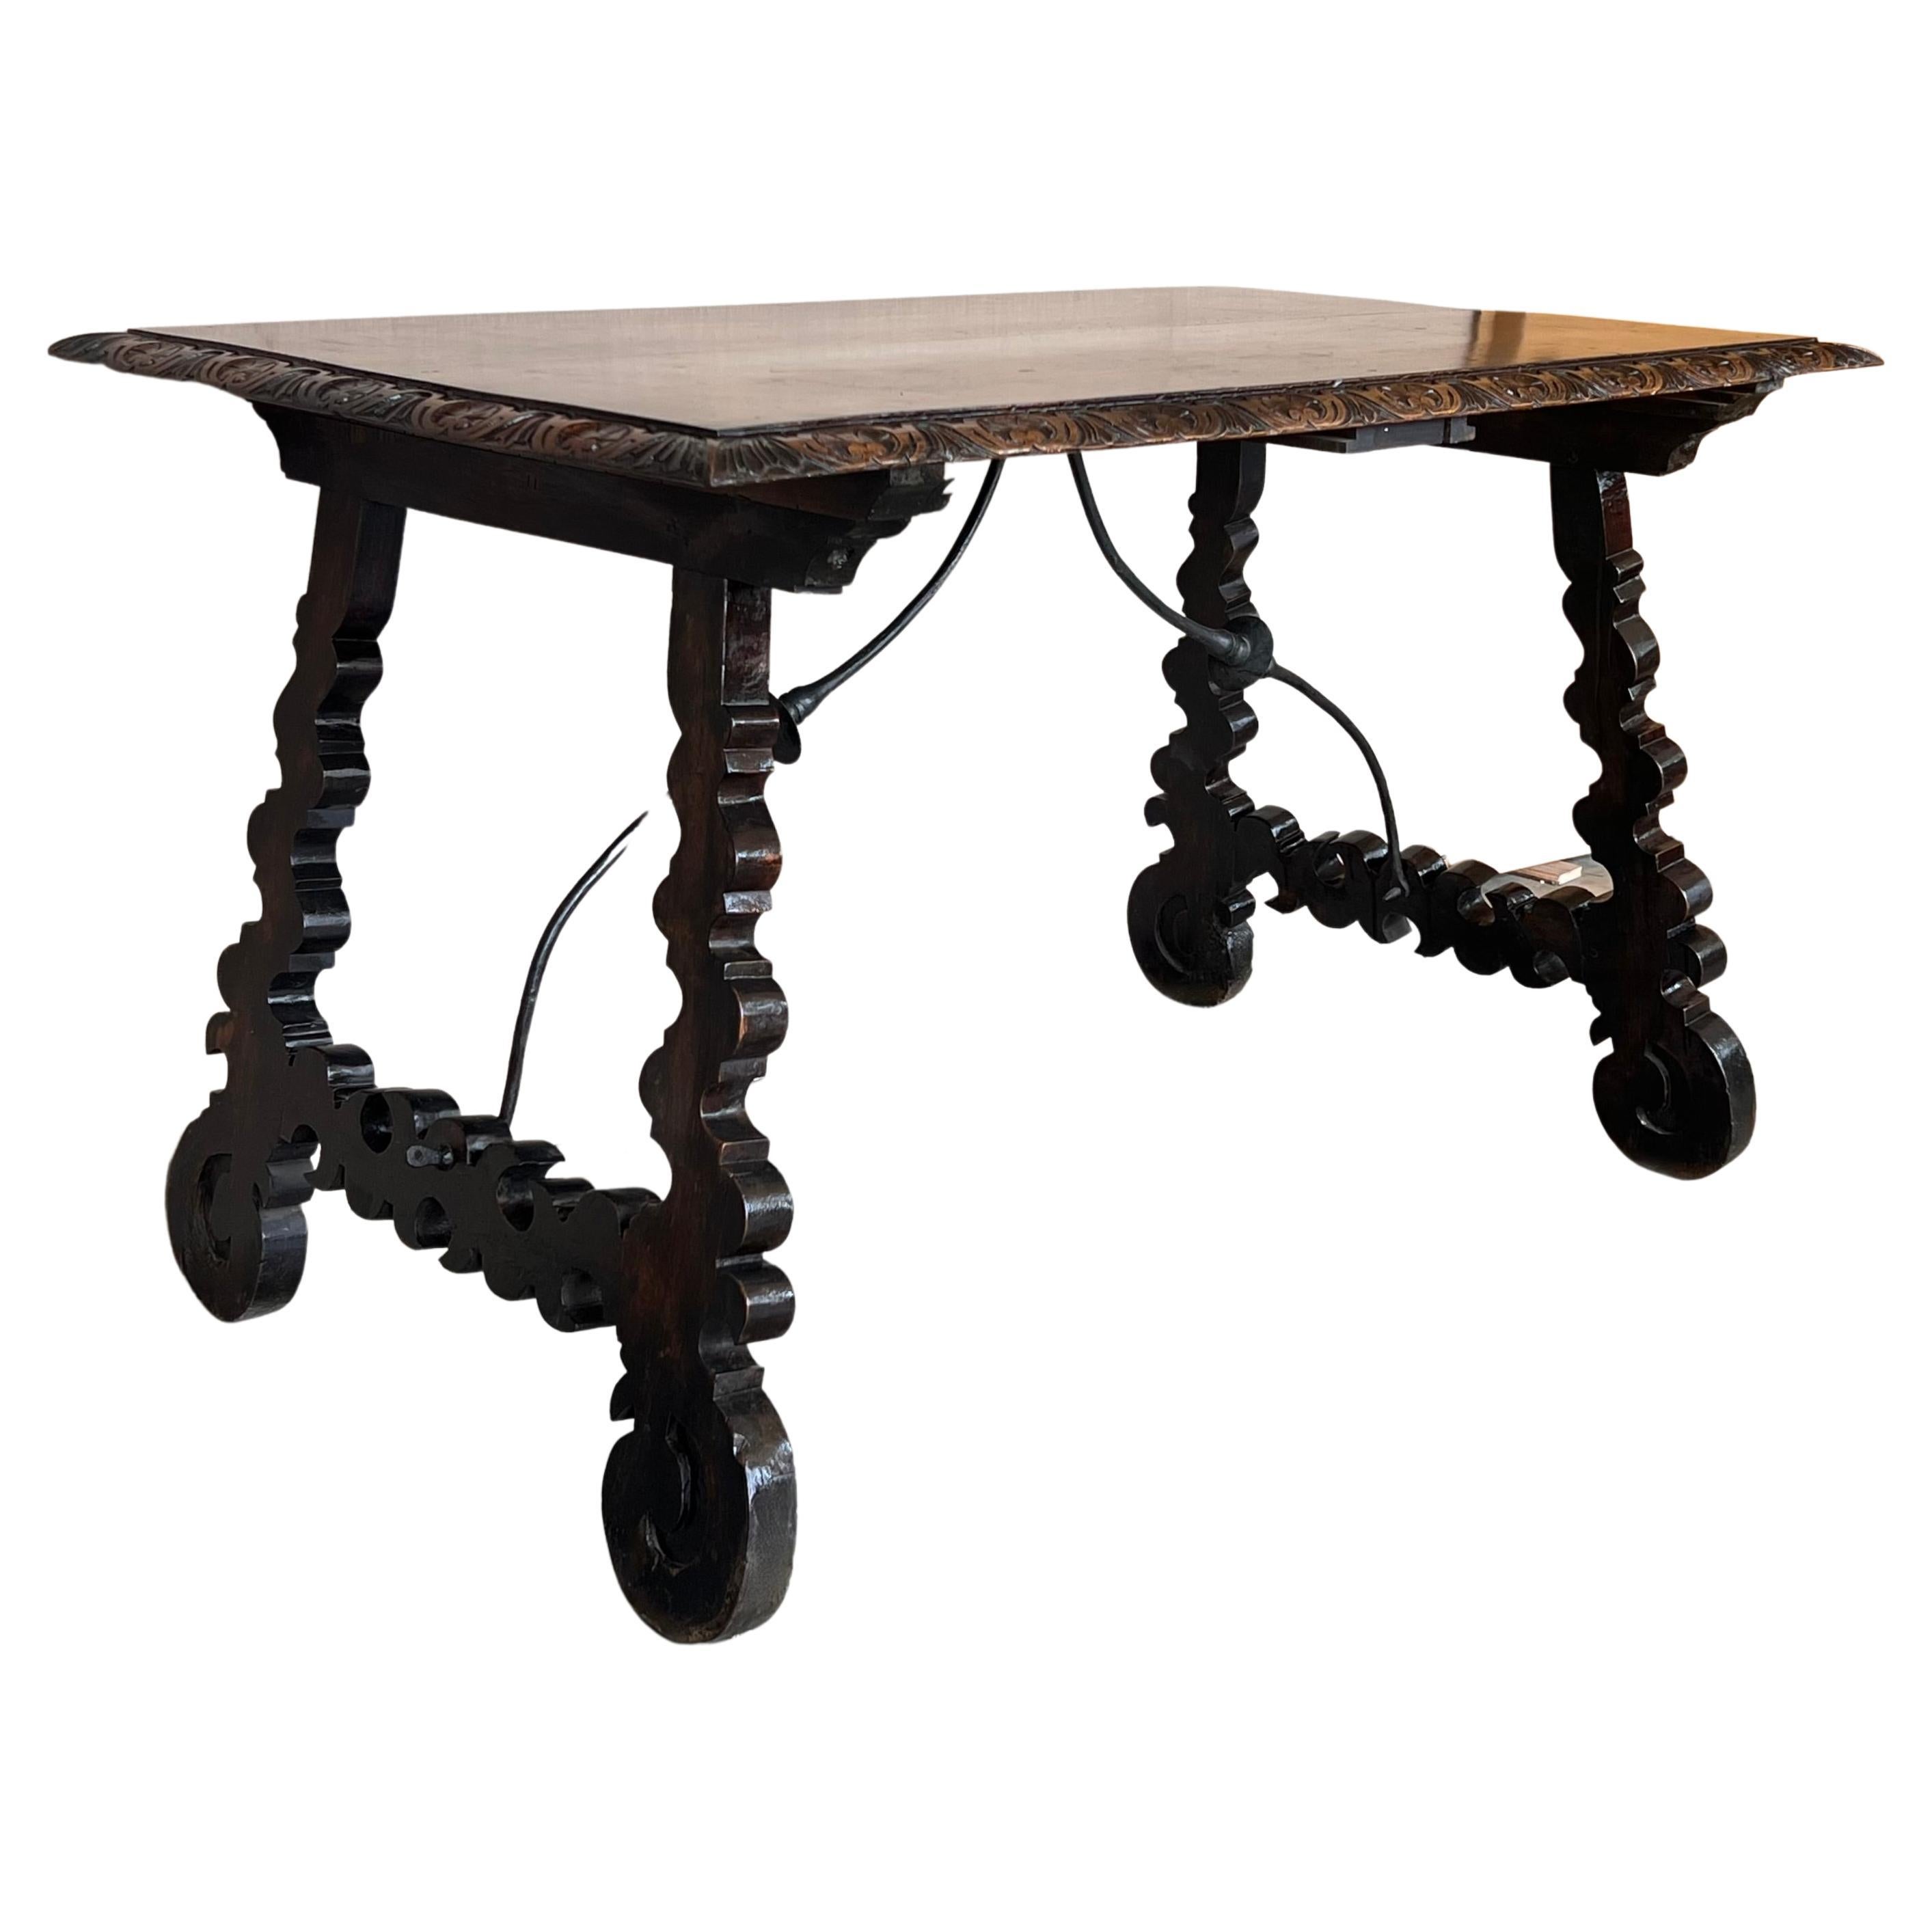 Table d'appoint en noyer avec pieds lyre sculptés .
Le dessus est finement sculpté sur les bords. 
Beau et original châssis en fer, espagnol, 19e siècle.